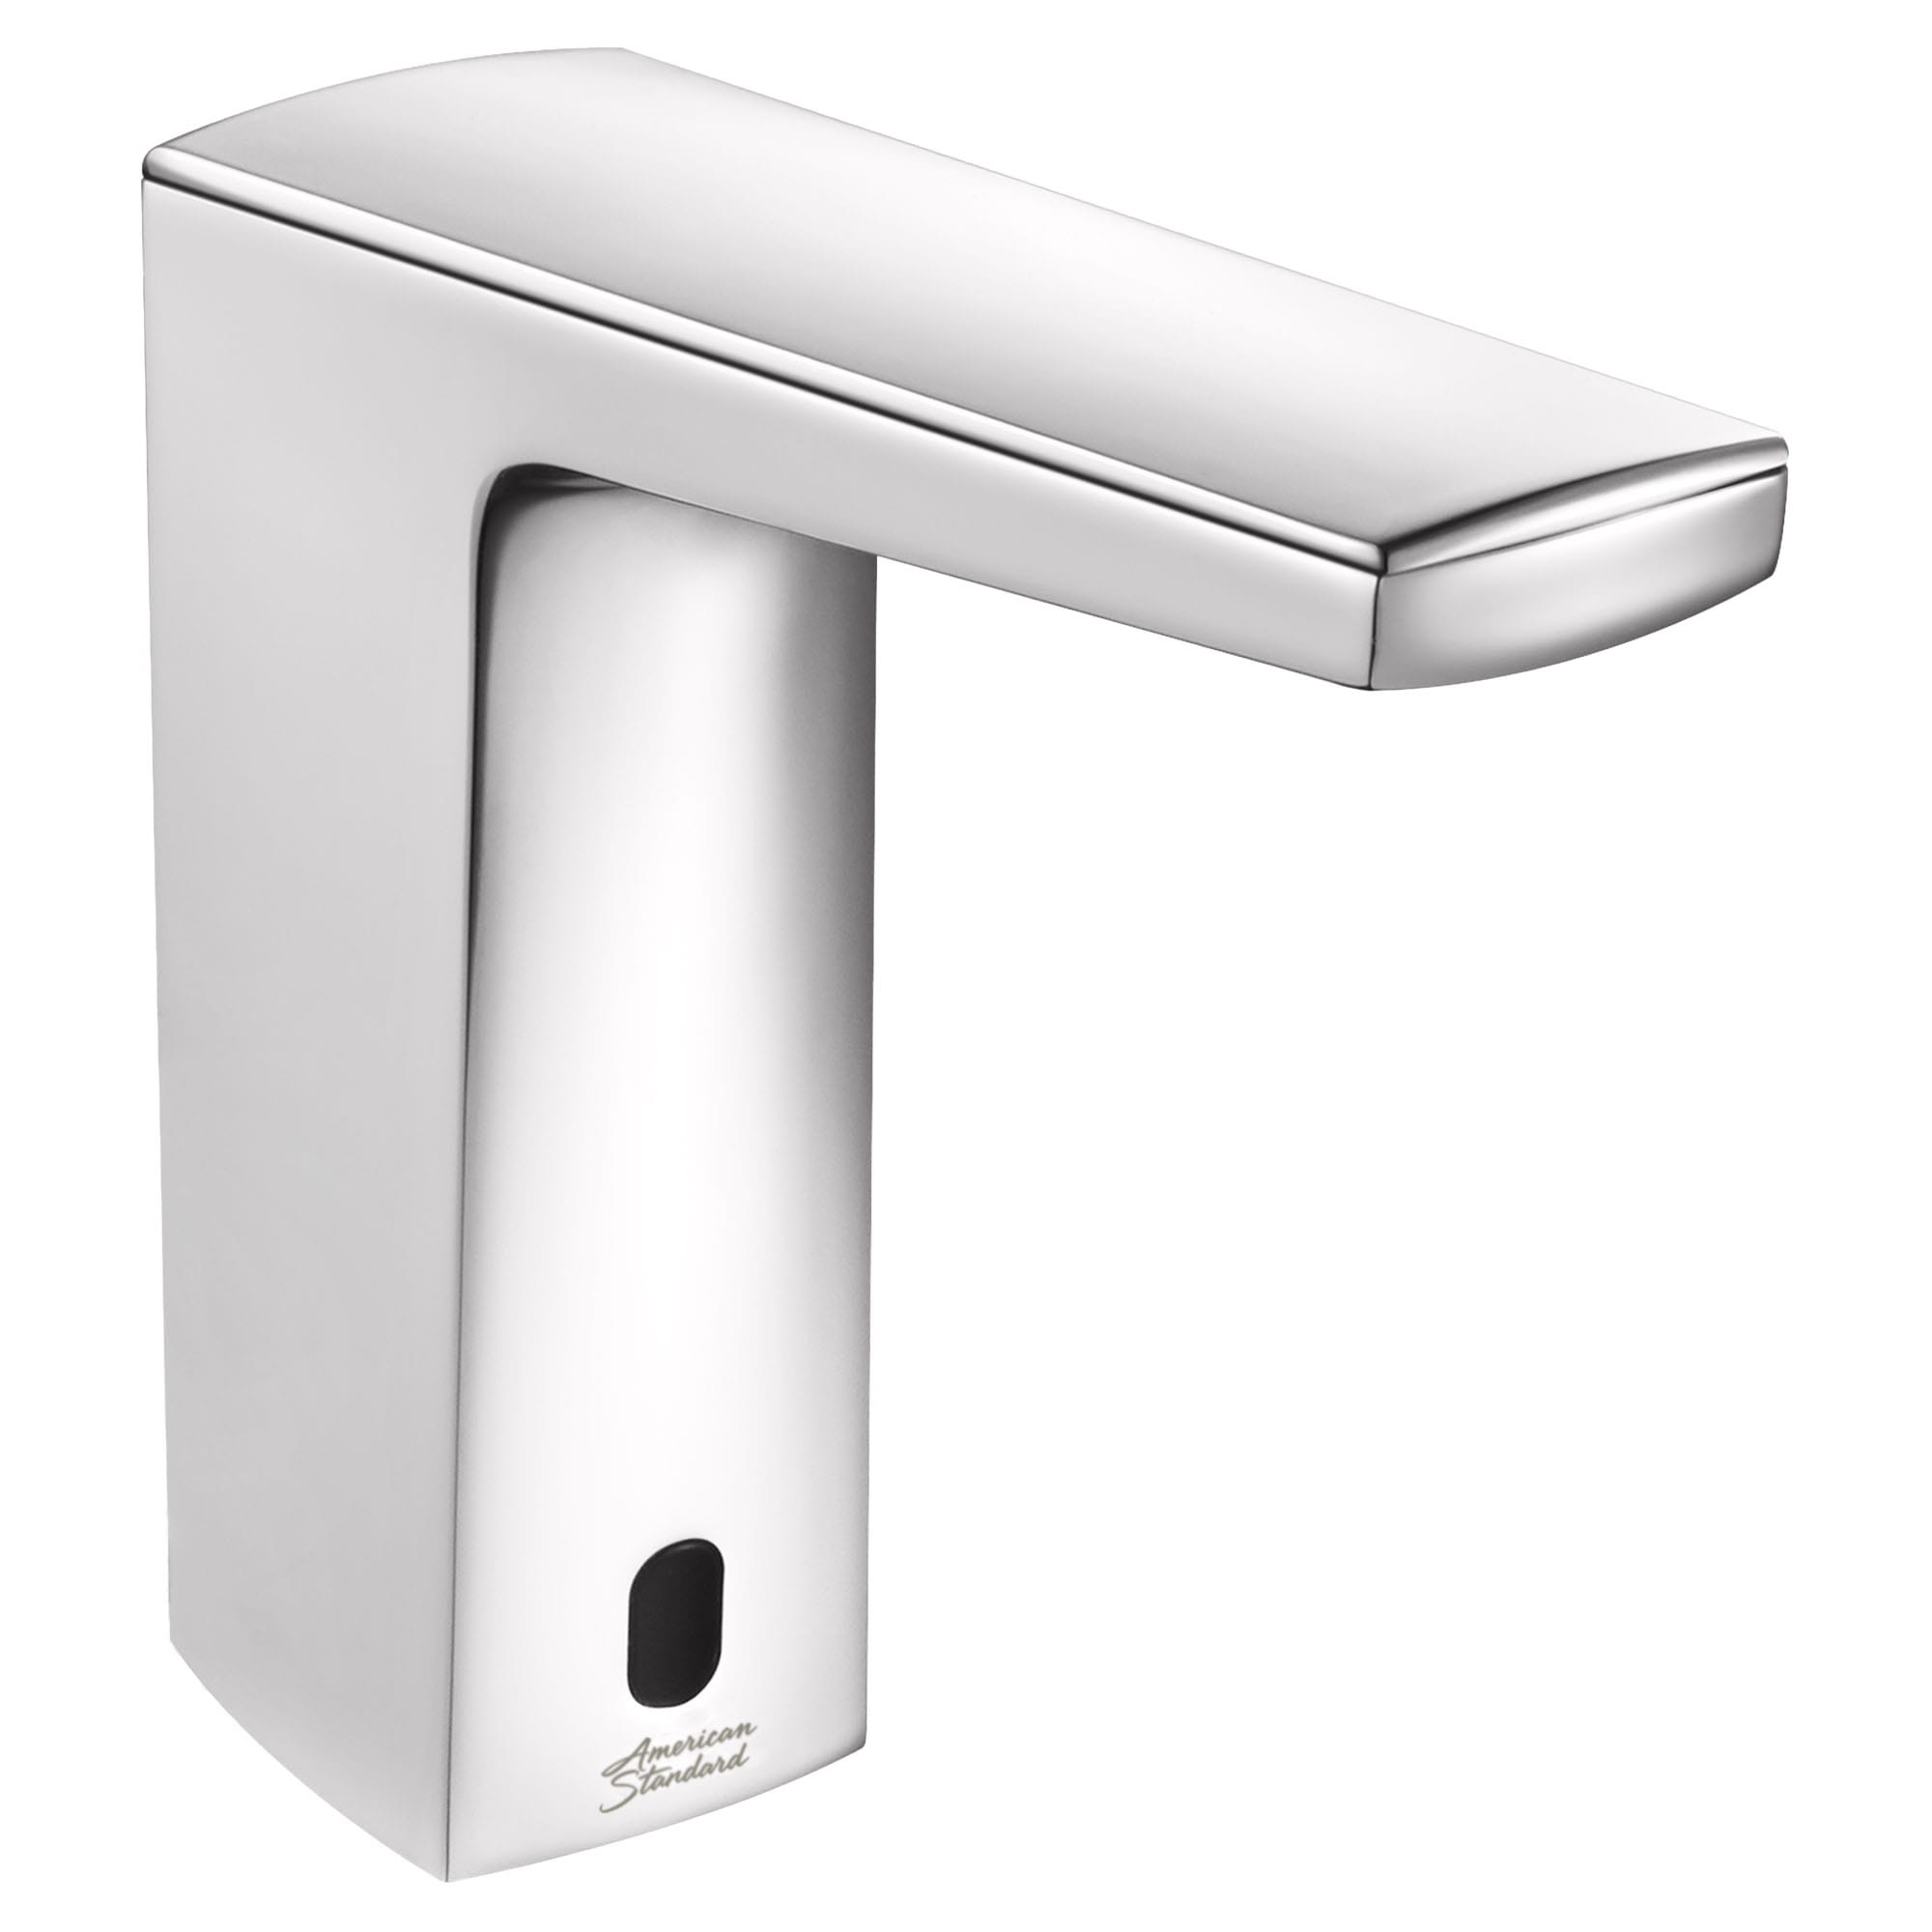 Paradigm Selectronic - robinet sans contact, alimentation à pile avec butée de sécurité SmarTherm + ADM, 1,5 gpm/5,7 lpm